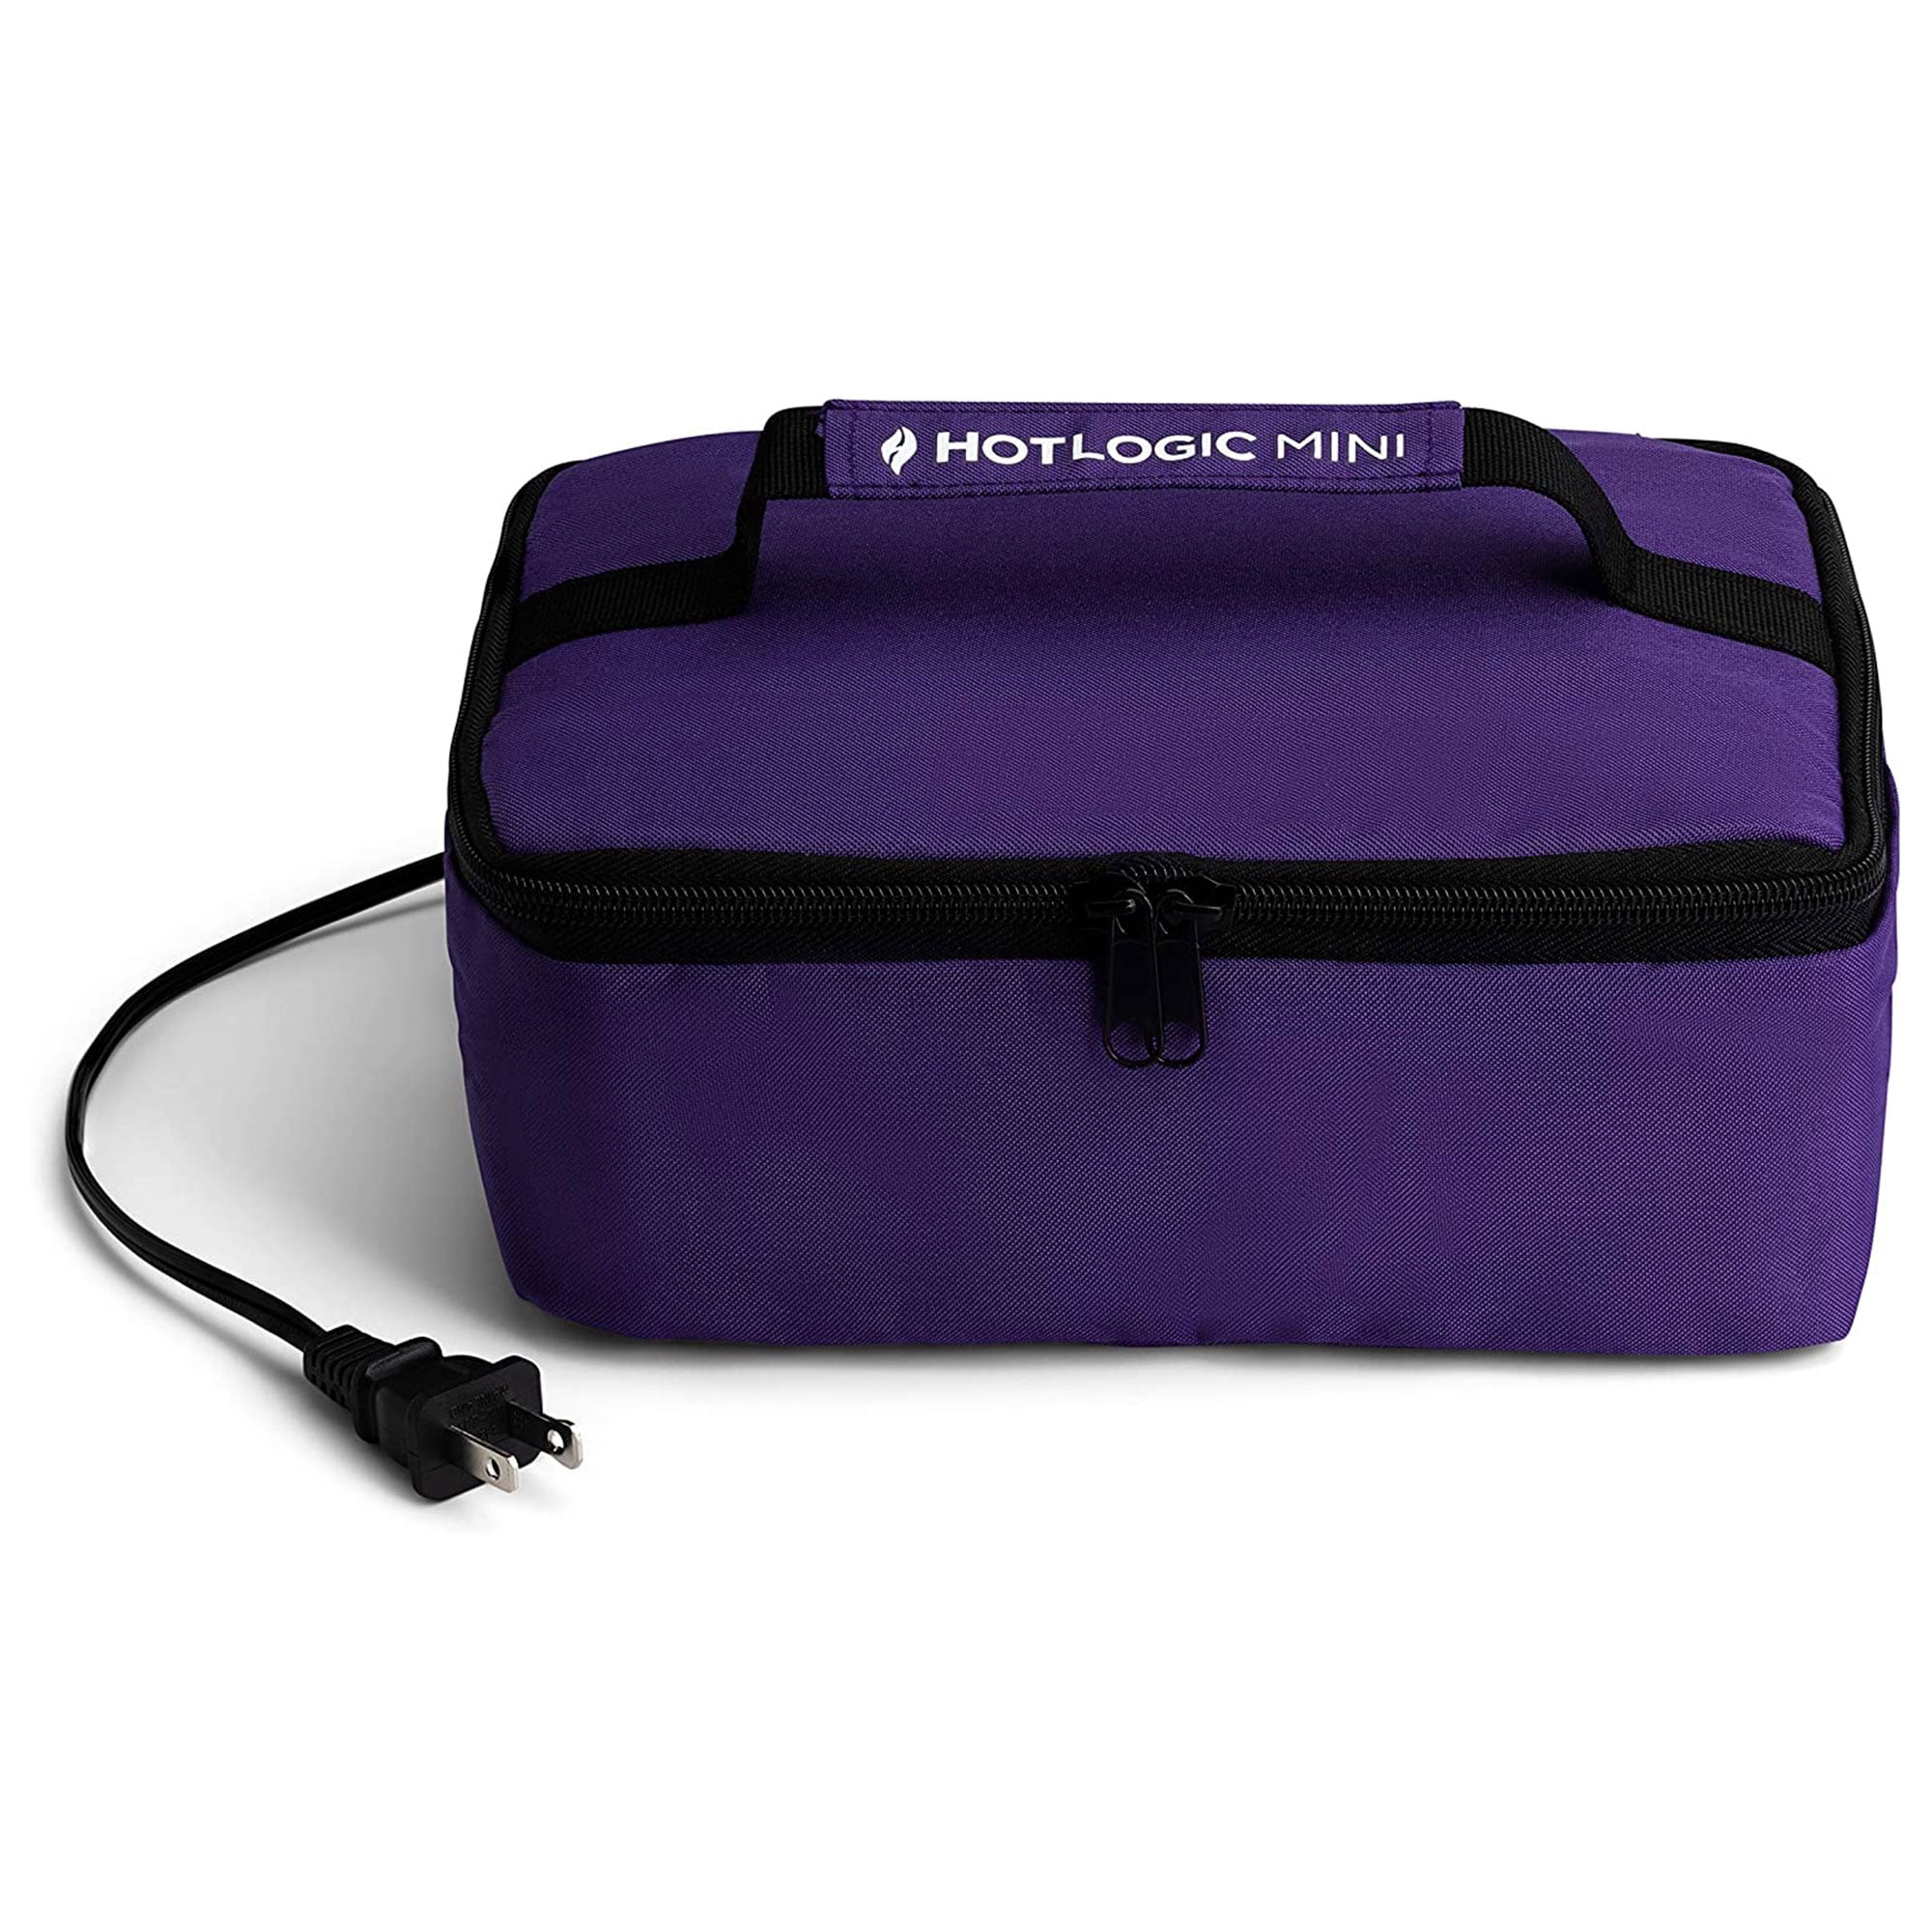 HOTLOGIC Portable Personal Expandable Mini Oven XP